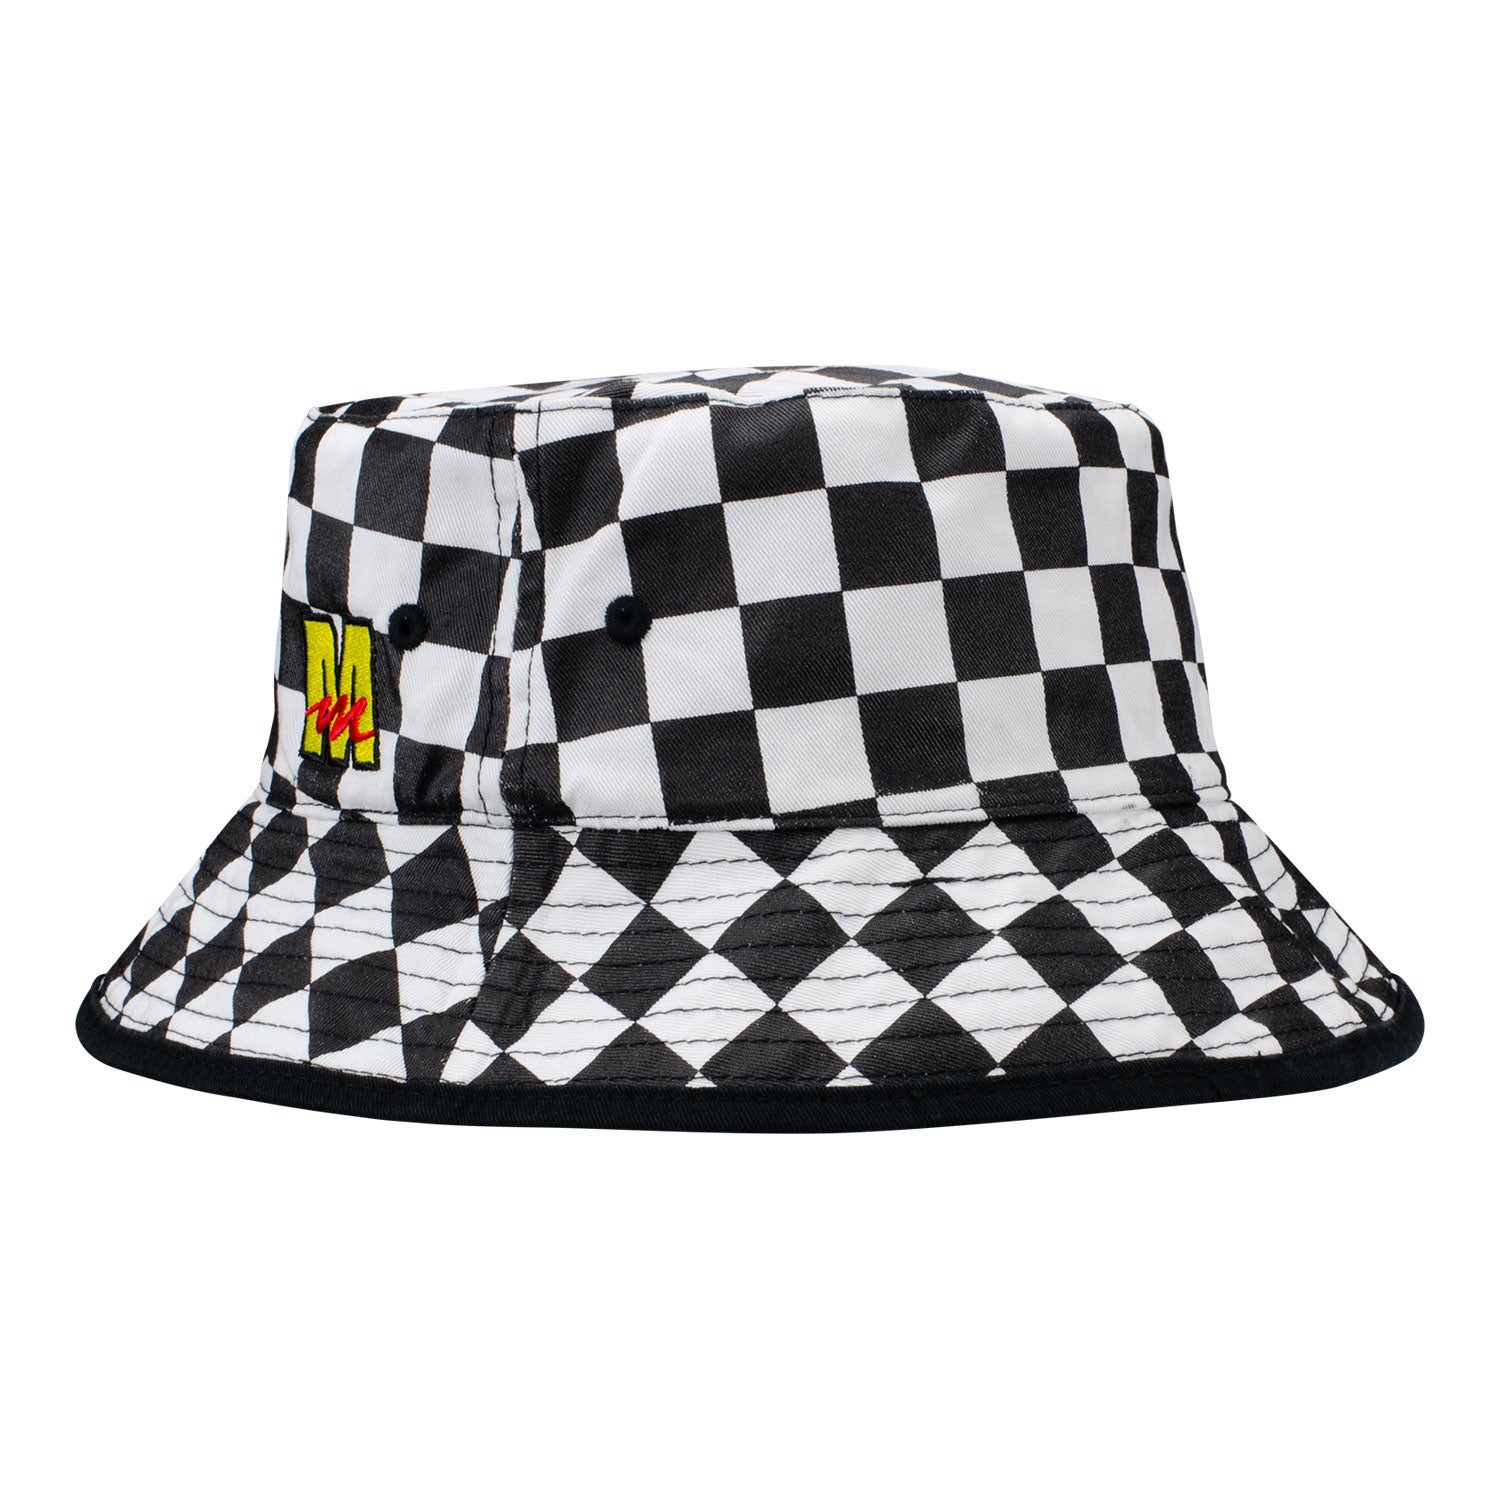 Mecum Auctions Black Reversible Bucket Hat - Front View